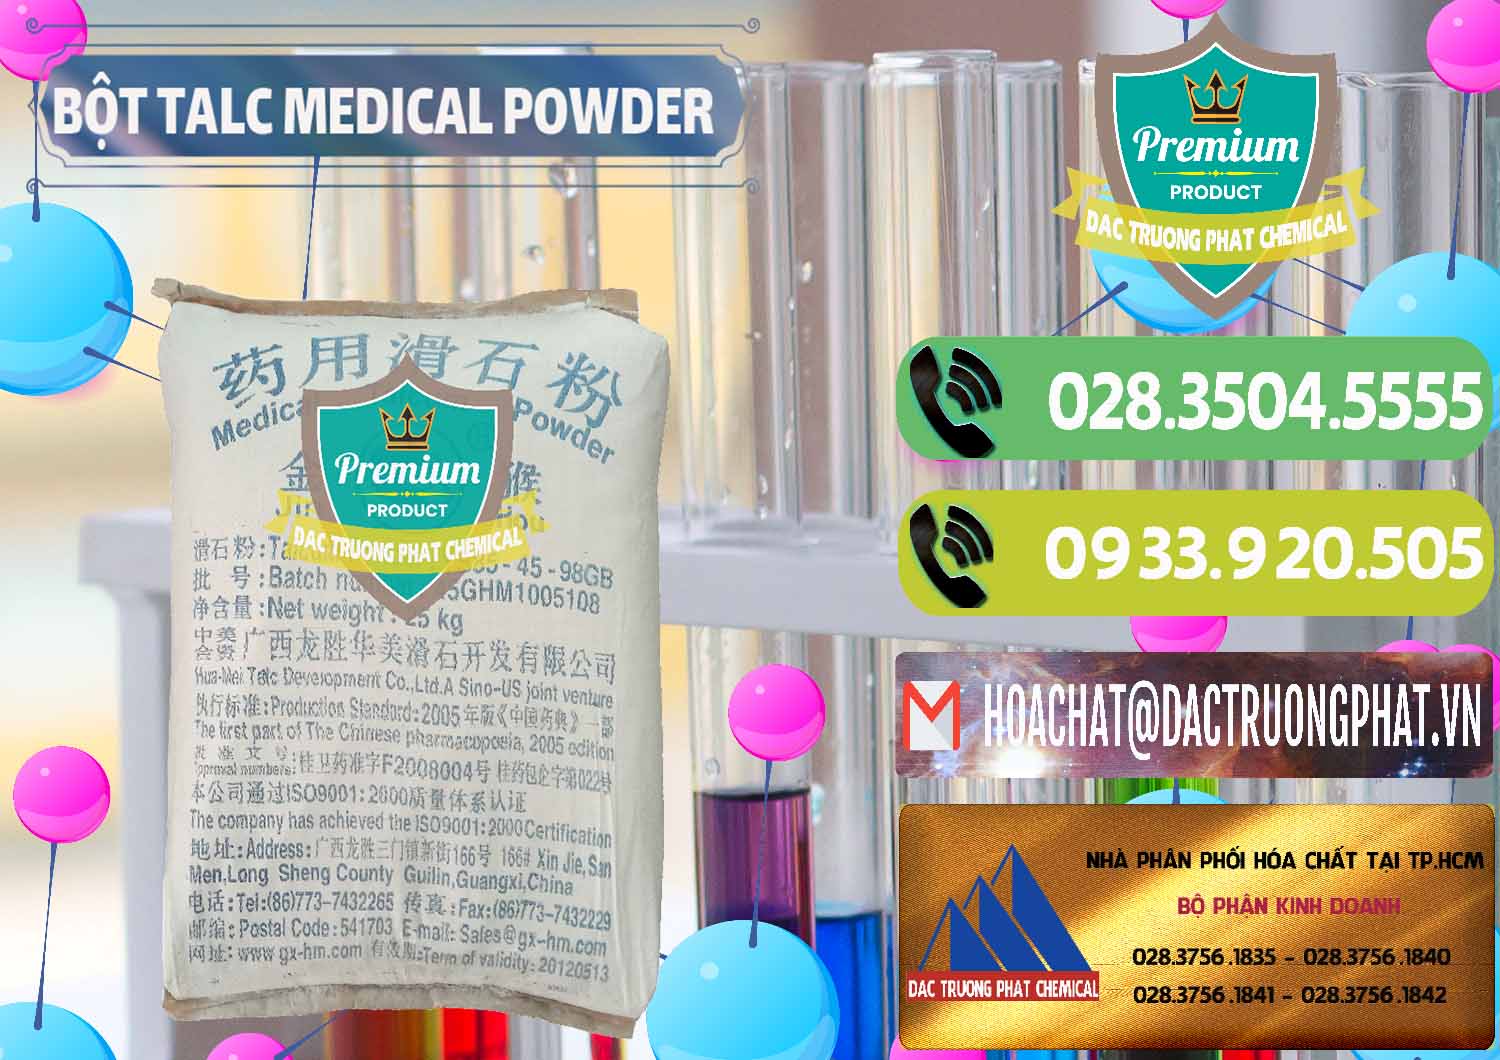 Cty bán ( cung cấp ) Bột Talc Medical Powder Trung Quốc China - 0036 - Cty chuyên phân phối ( cung ứng ) hóa chất tại TP.HCM - hoachatmientay.vn